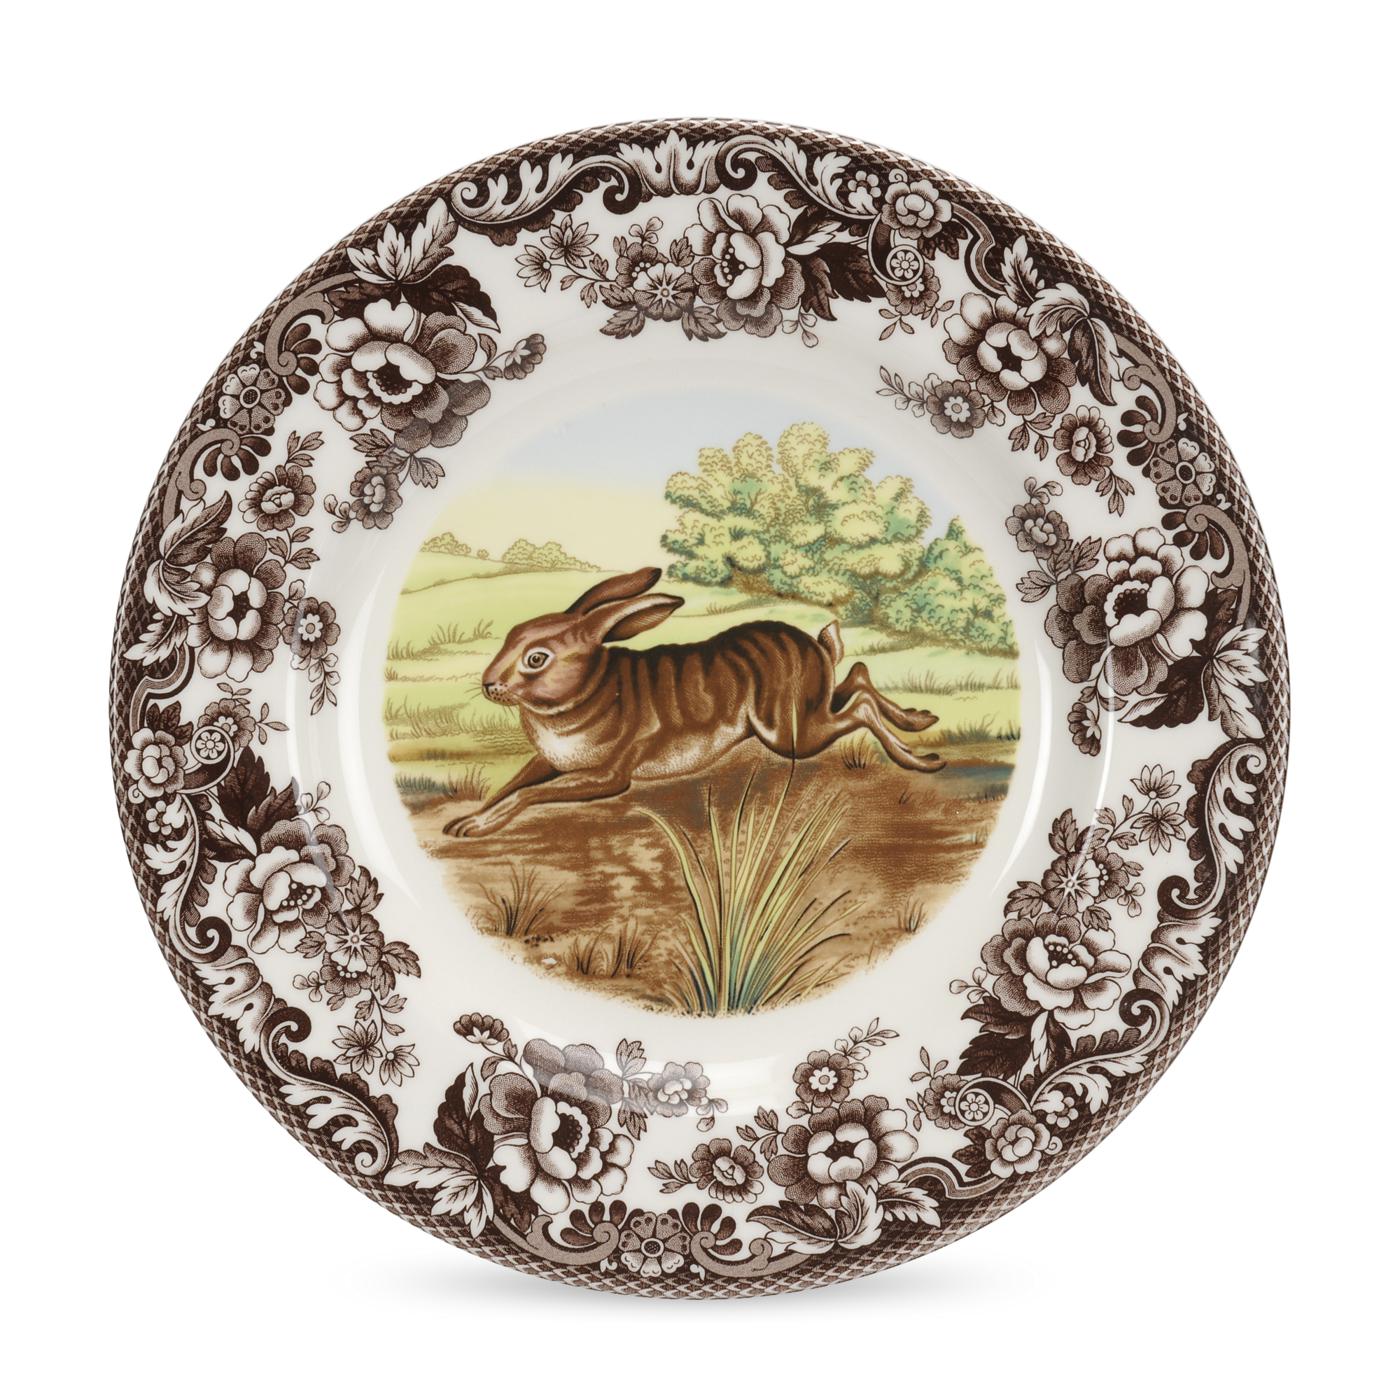 Spode Woodland Dinner Plate, Rabbit